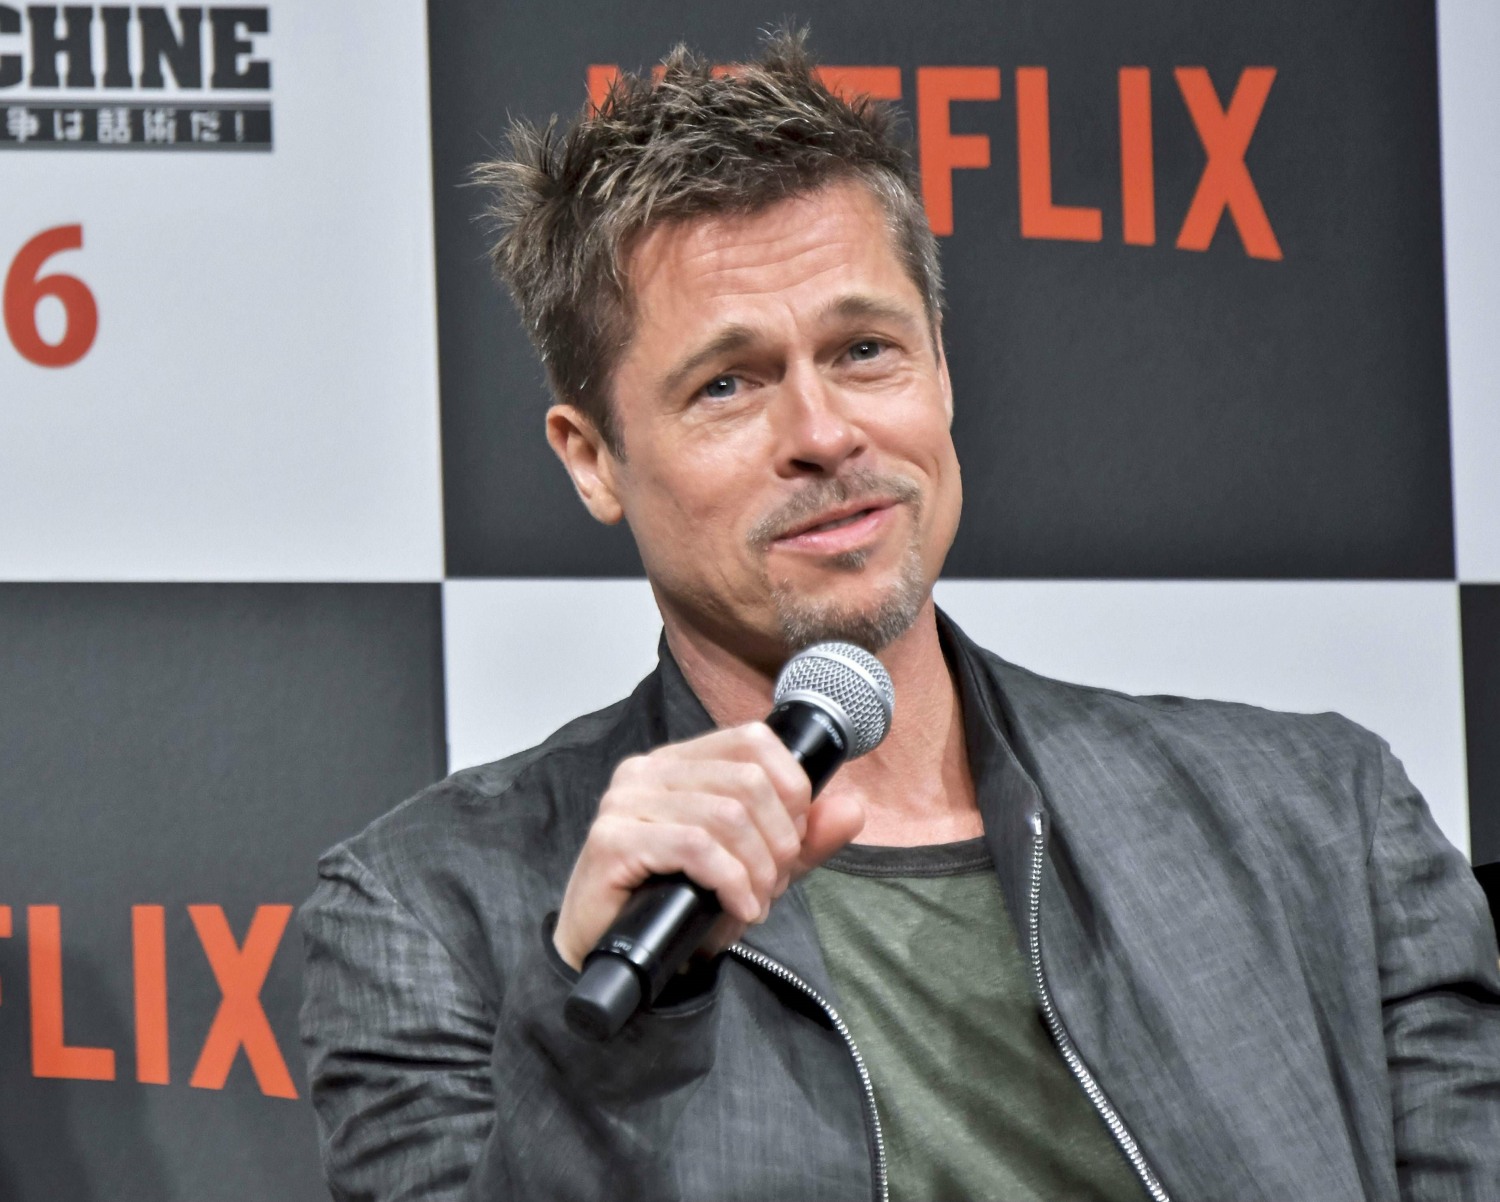 Brad Pitt attends Press conference to NETFLIX Film "War Machine" in Tokyo